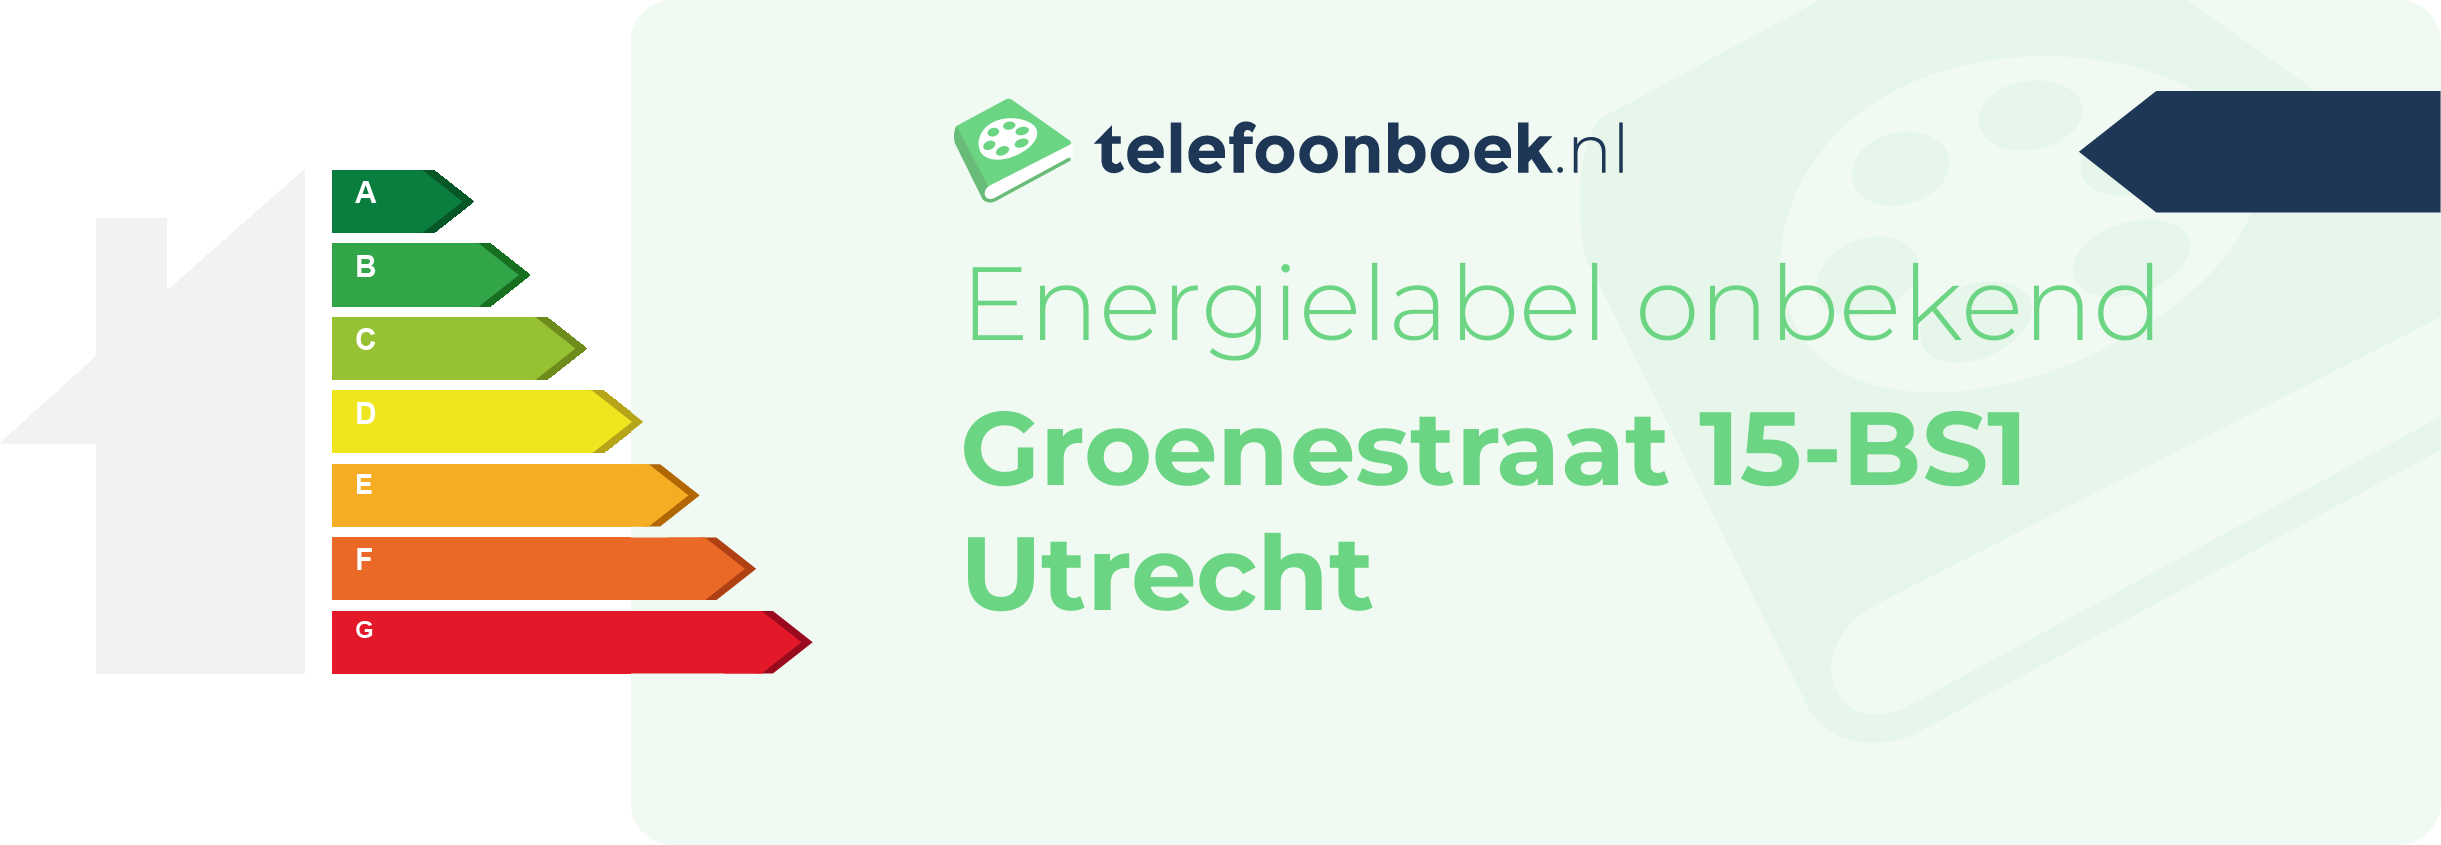 Energielabel Groenestraat 15-BS1 Utrecht